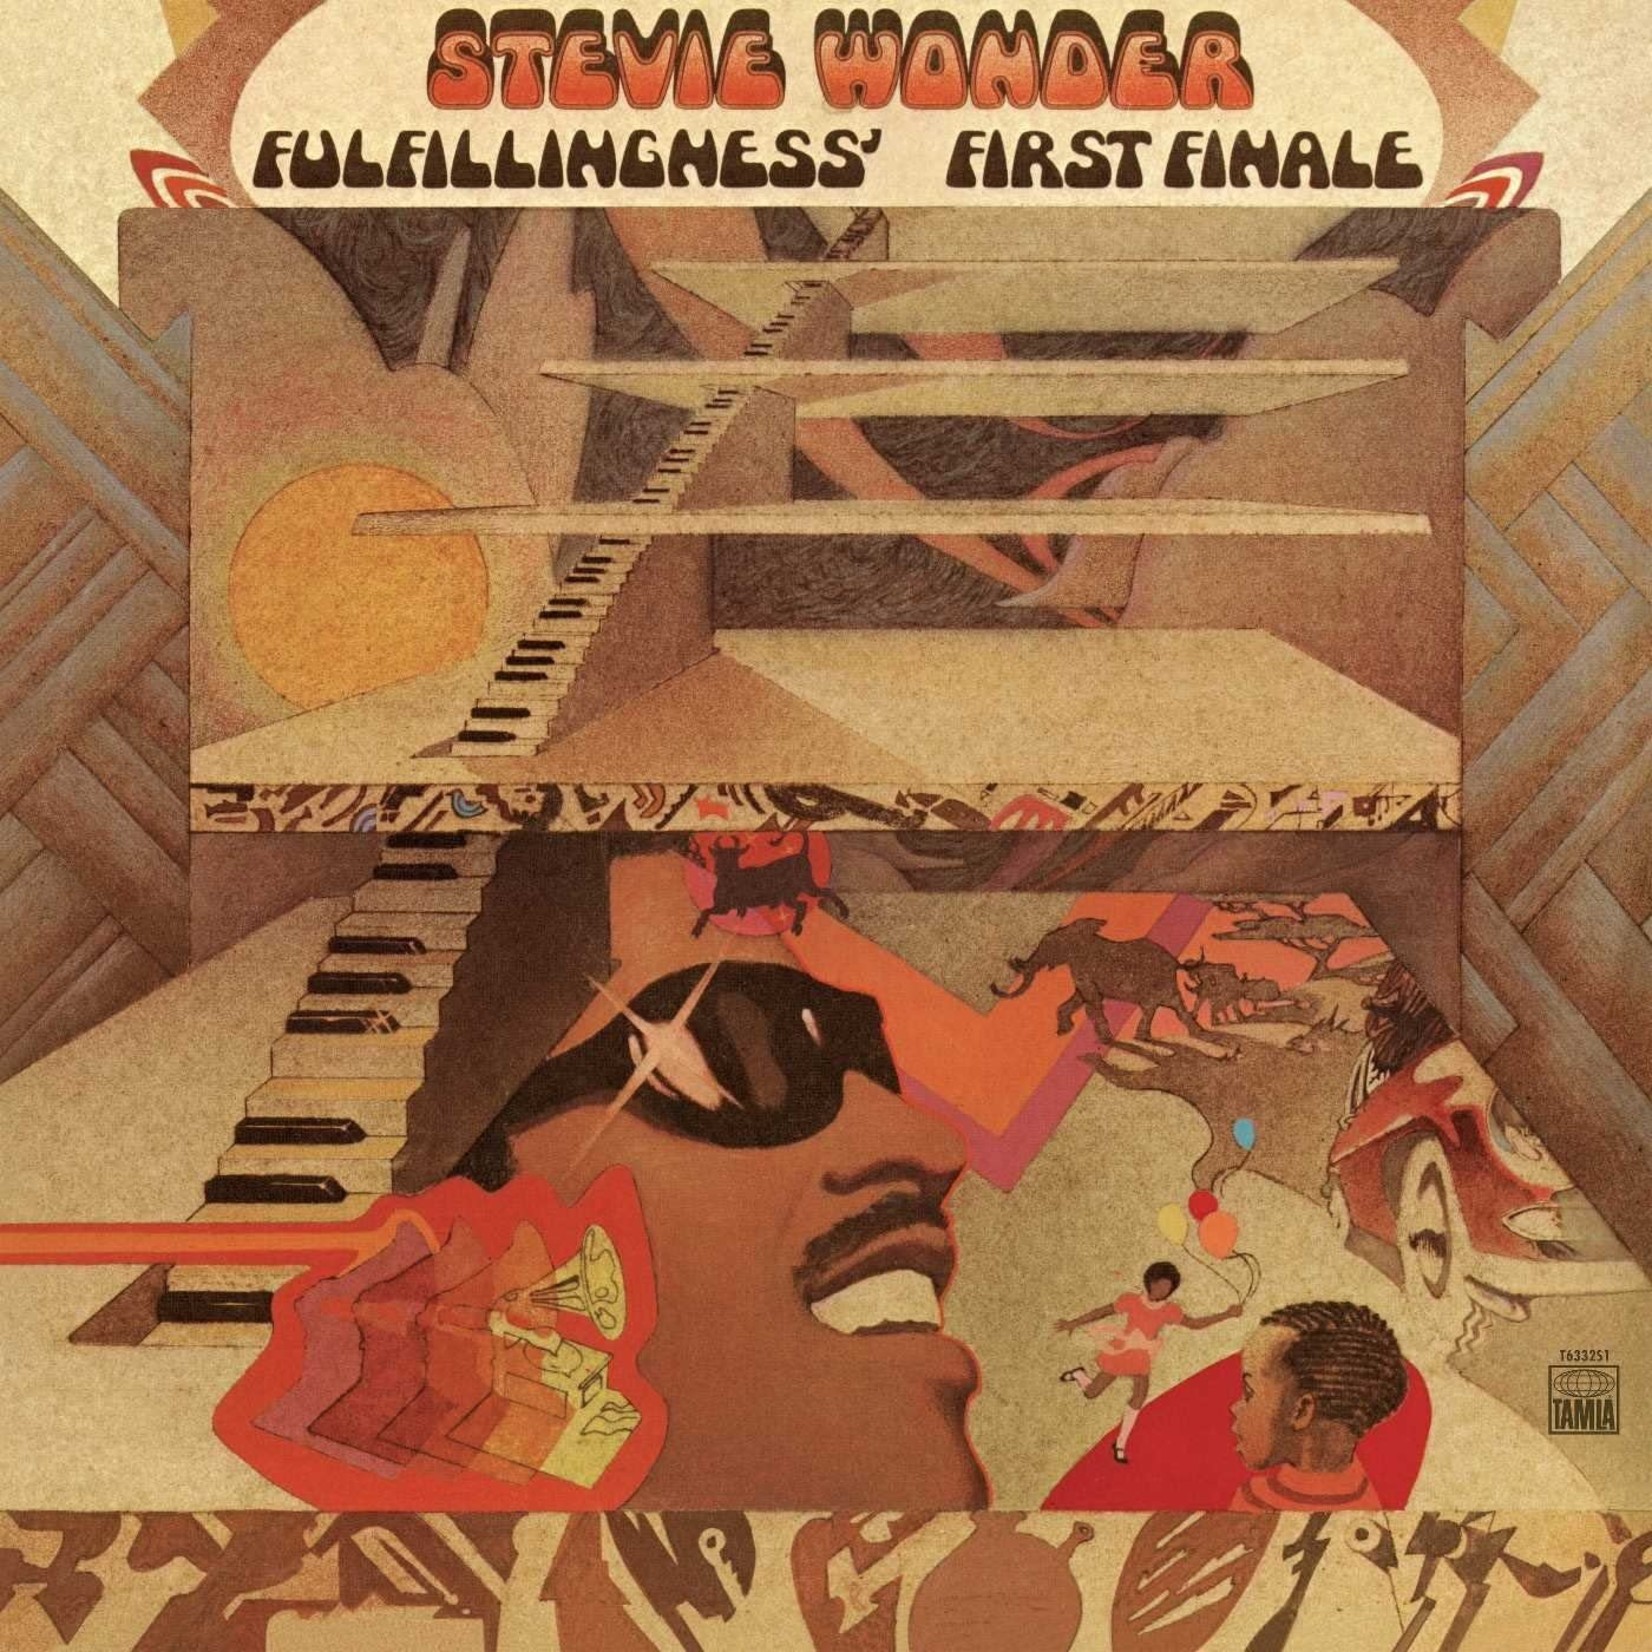 [Vintage] Stevie Wonder - Fulfillingness' First Finale